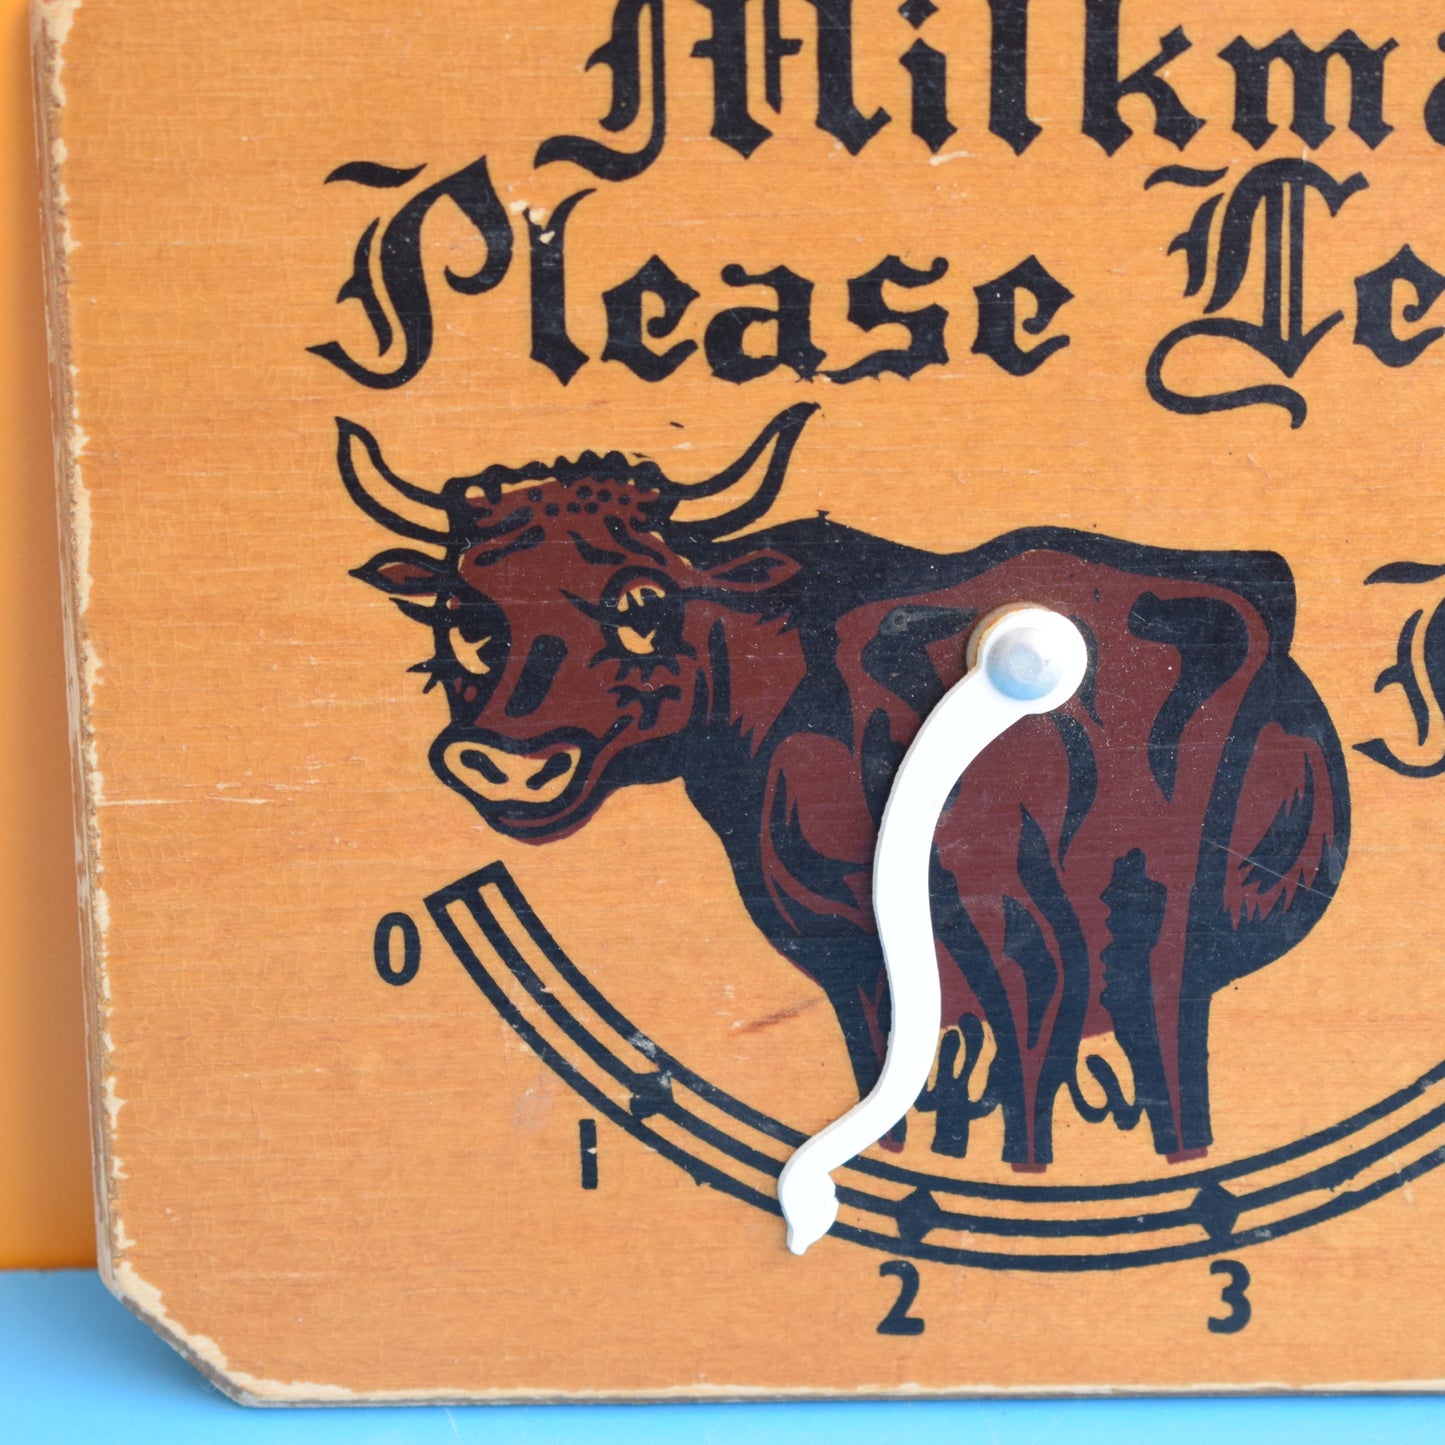 Vintage 1960s Milk Delivery Notice